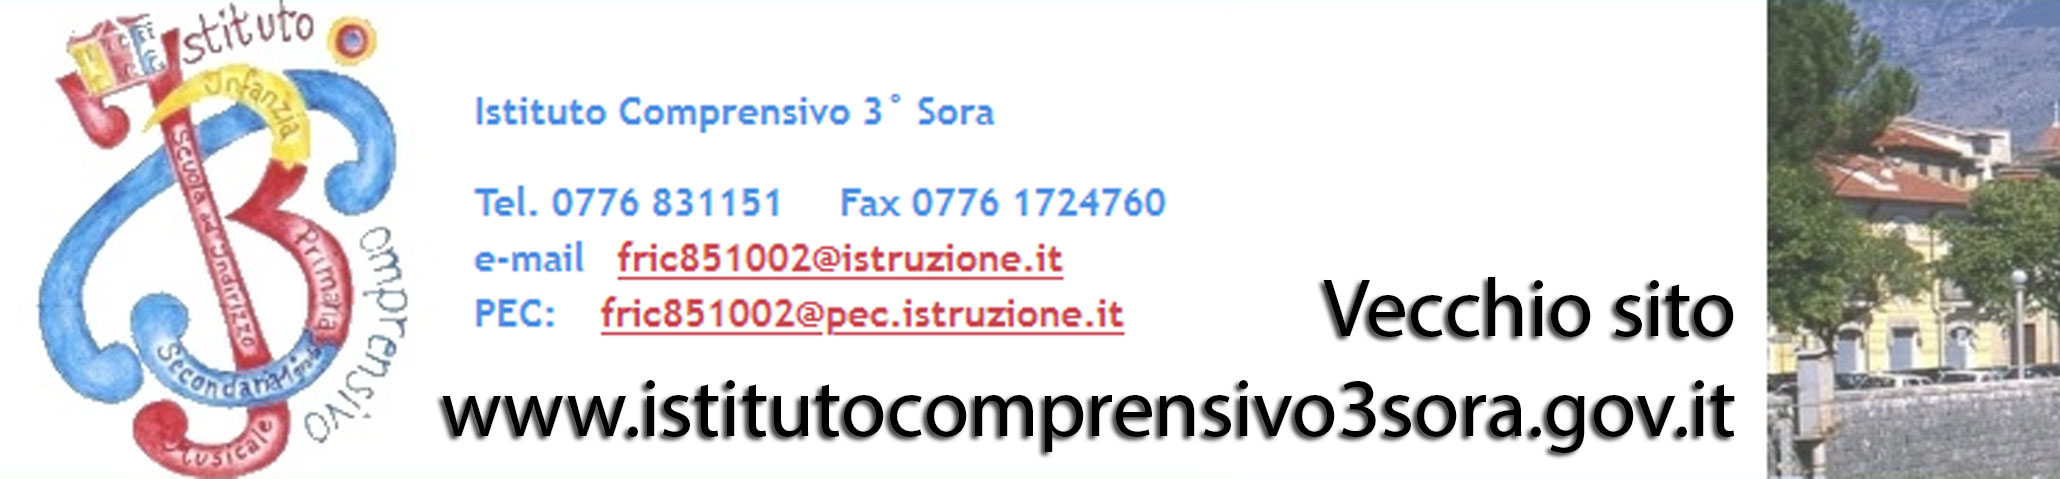 www.istitutocomprensivo3sora.gov.it